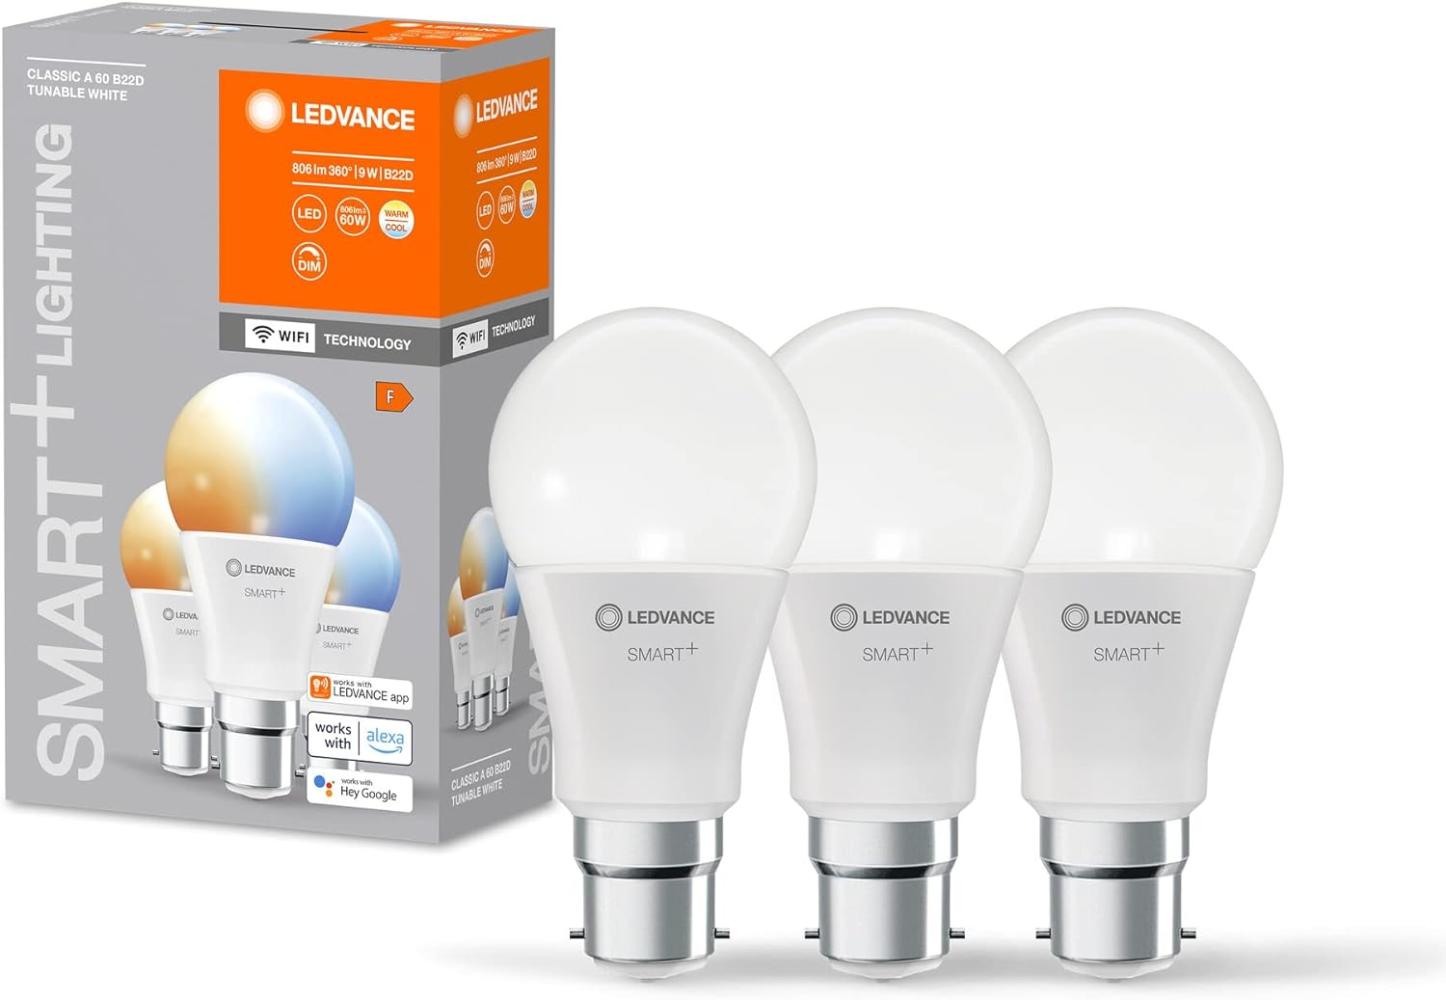 LEDVANCE Smarte LED-Lampe mit WiFi-Technologie für B22d-Sockel, matte Optik ,Lichtfarbe änderbar (2700K-6500K), 806 Lumen, Ersatz für herkömmliche 60W-Leuchtmittel, smart dimmbar, 3-er Pack Bild 1